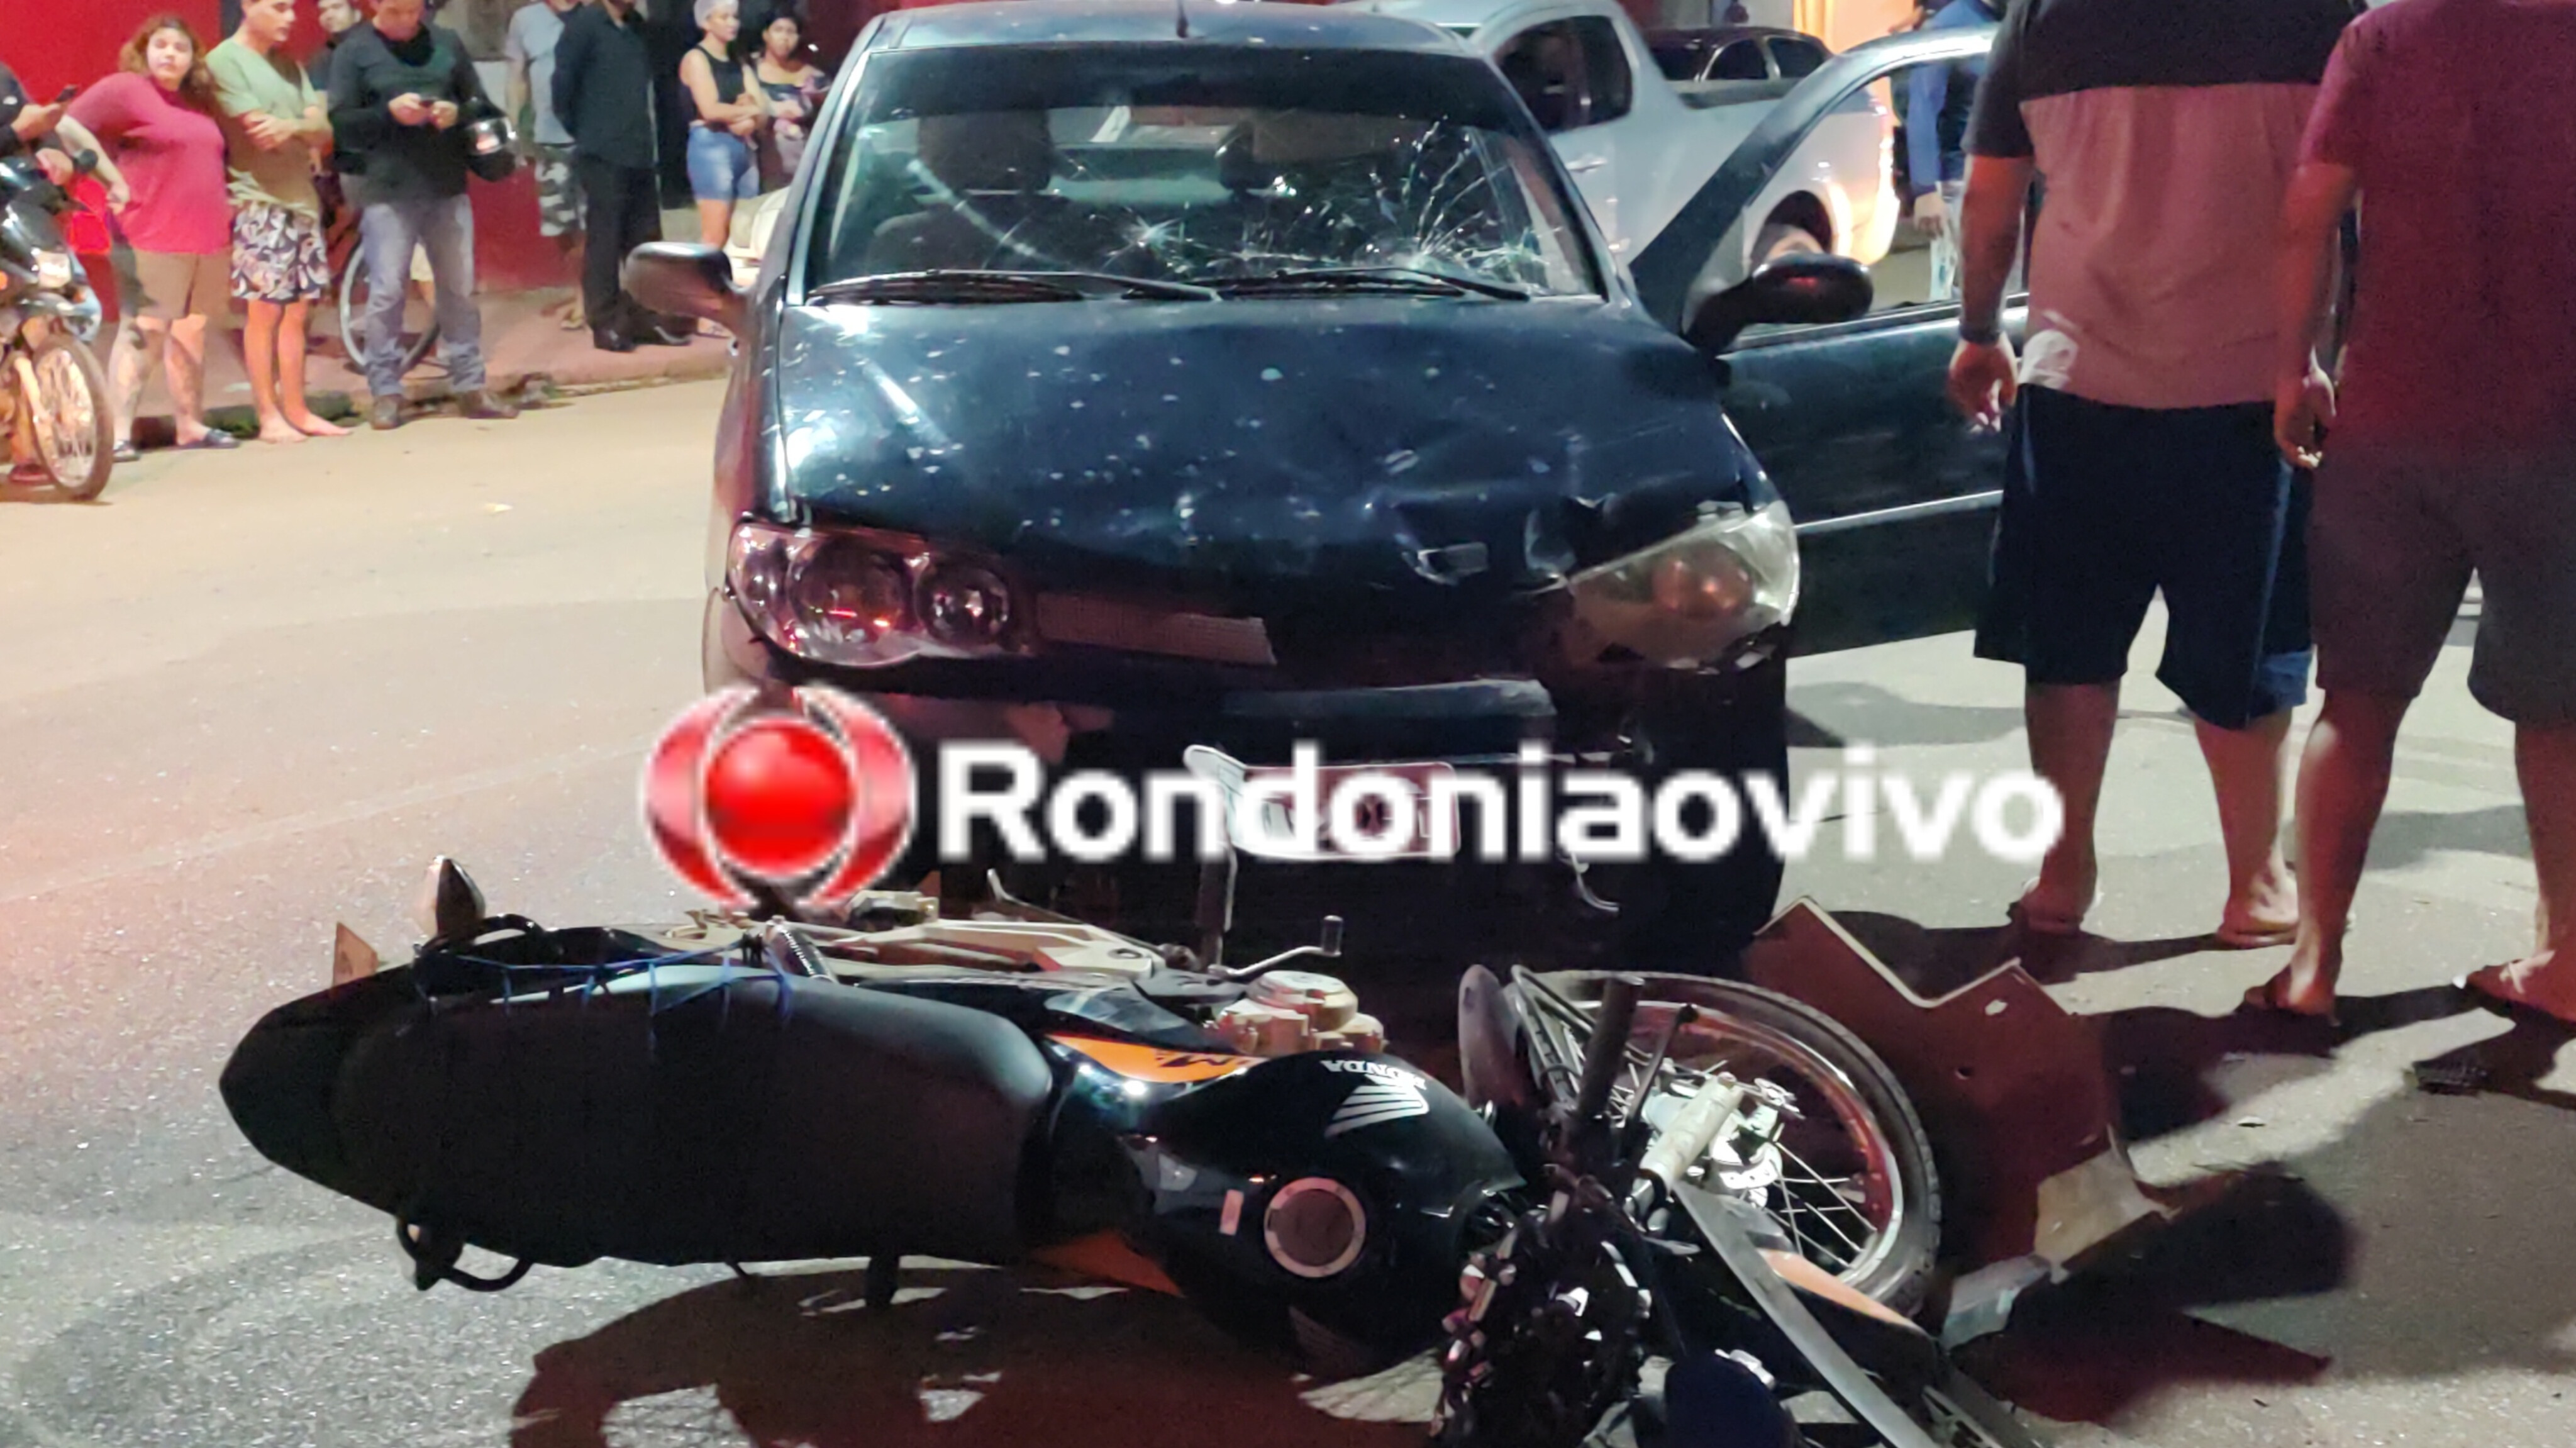 URGENTE: Passageiro de moto aplicativo morre em grave acidente